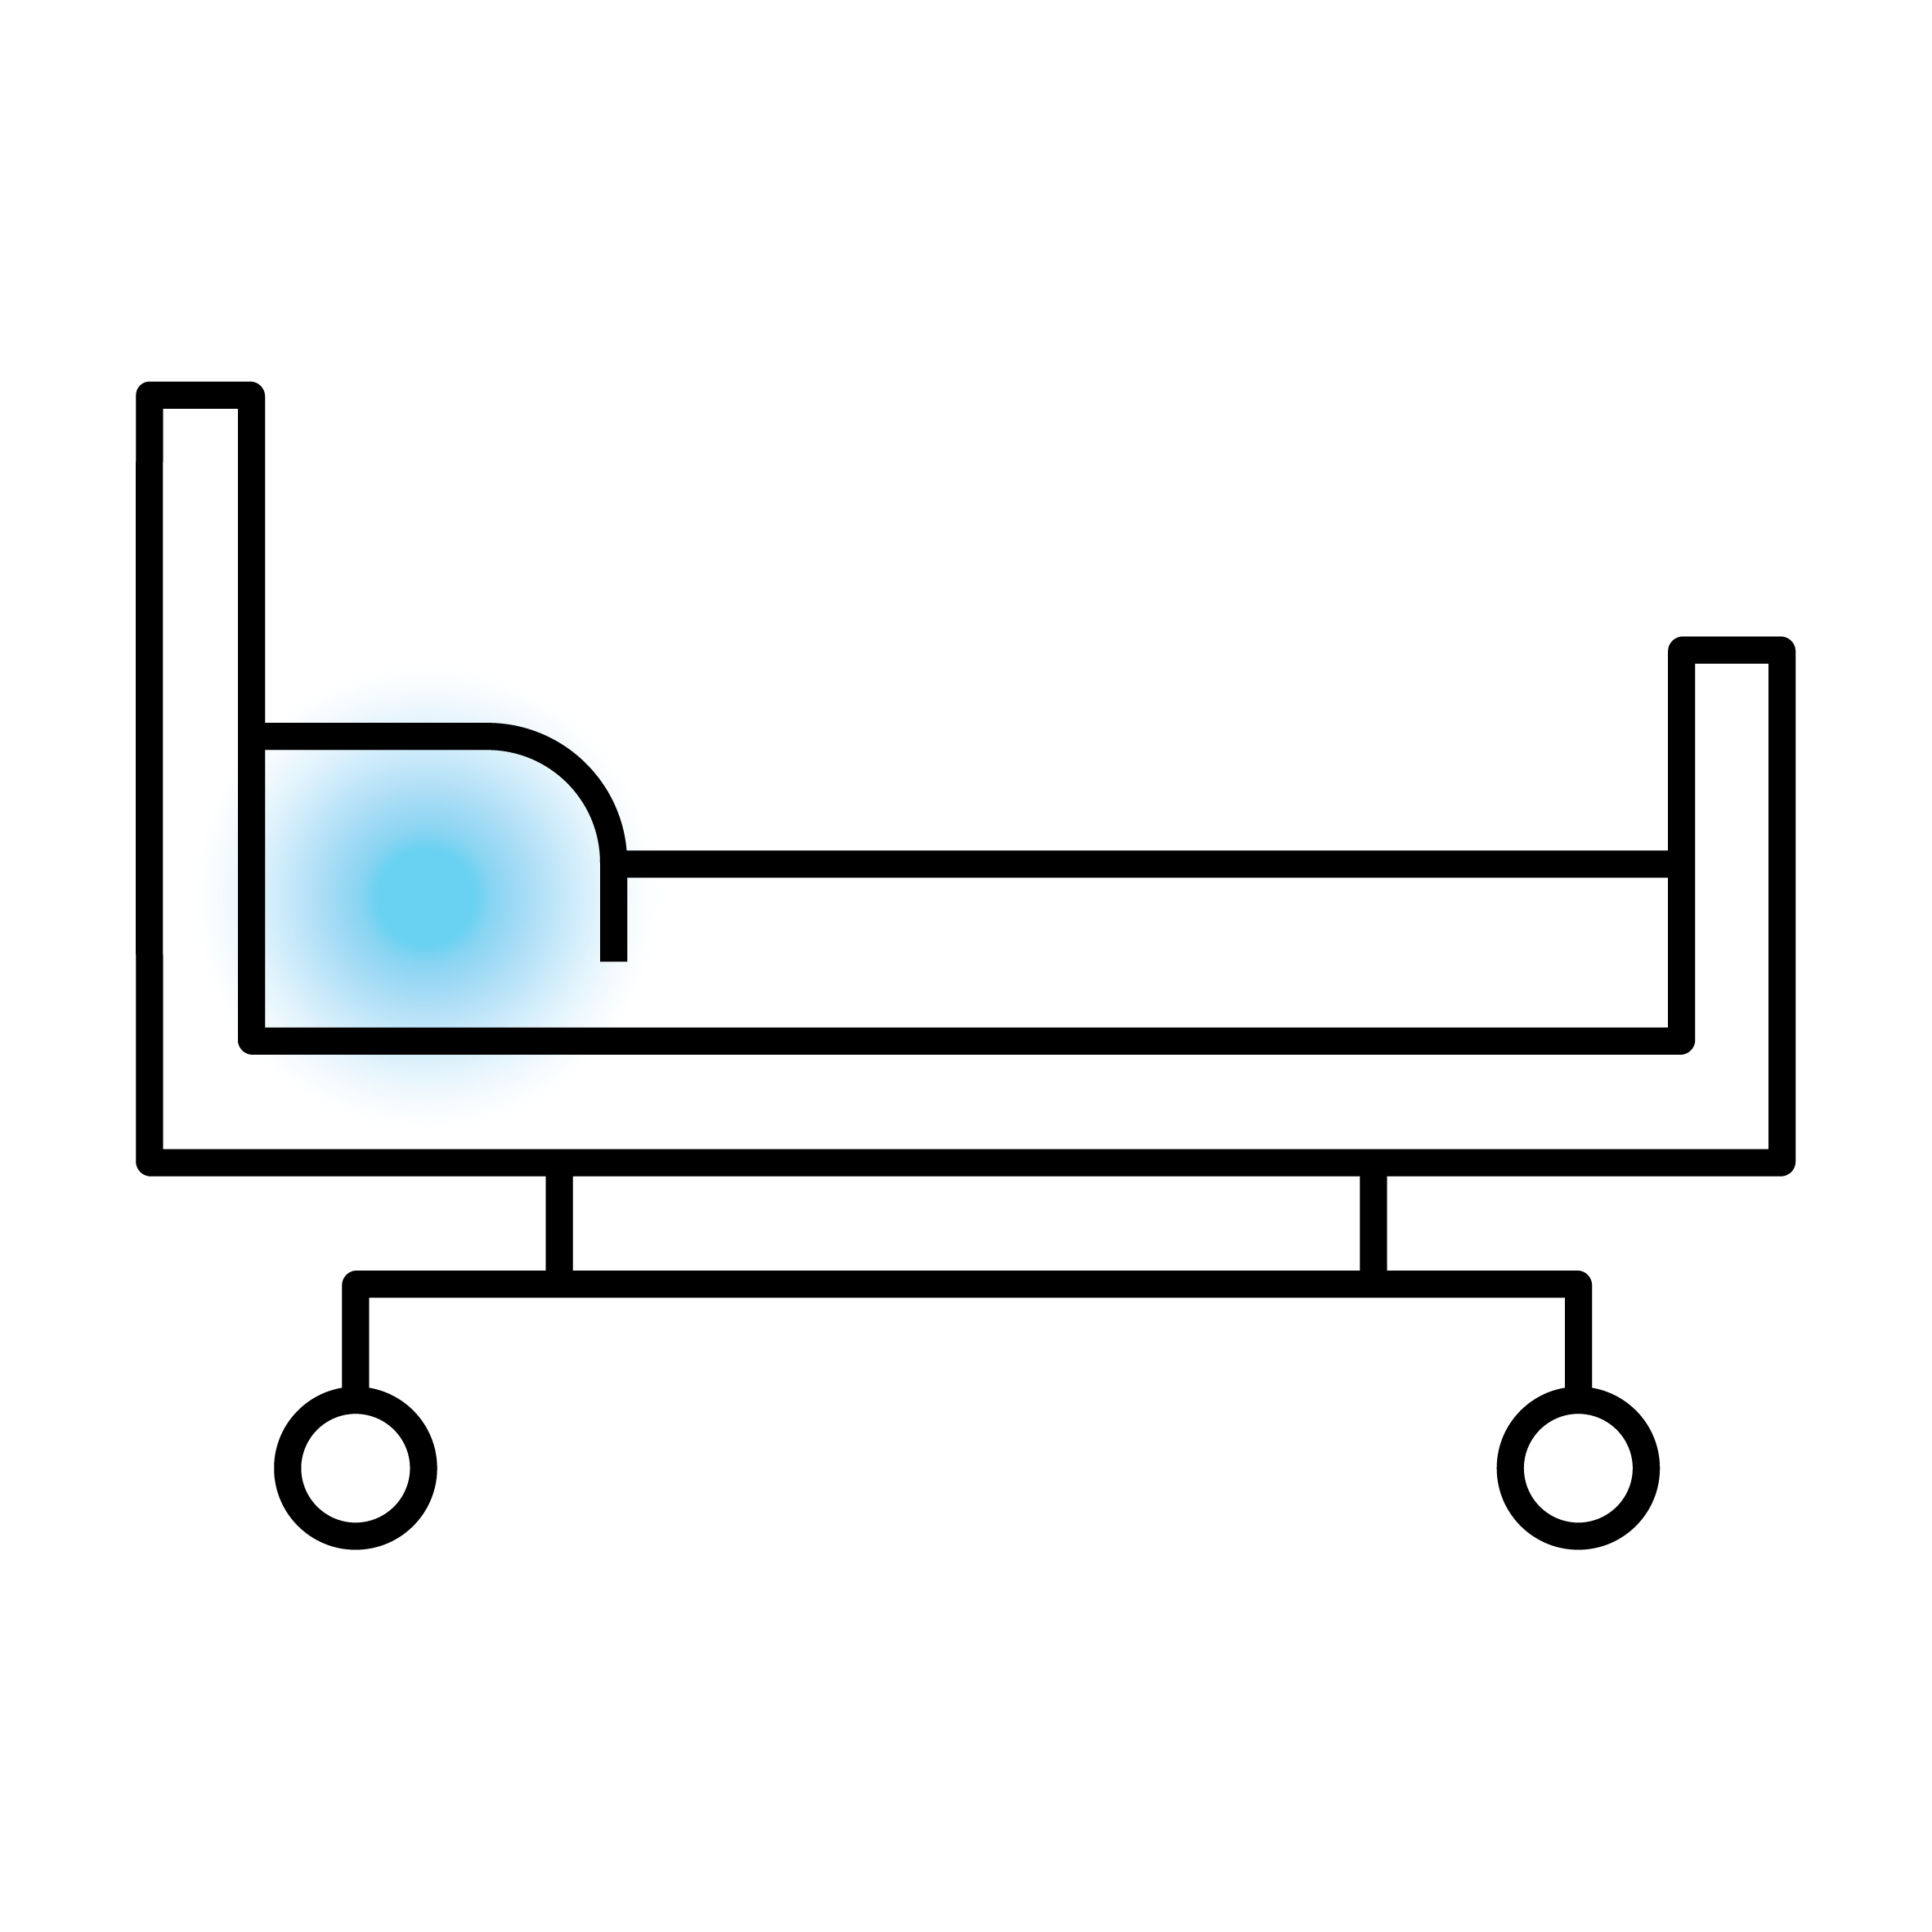 Krankenhausbett-Symbol im Flachdesign